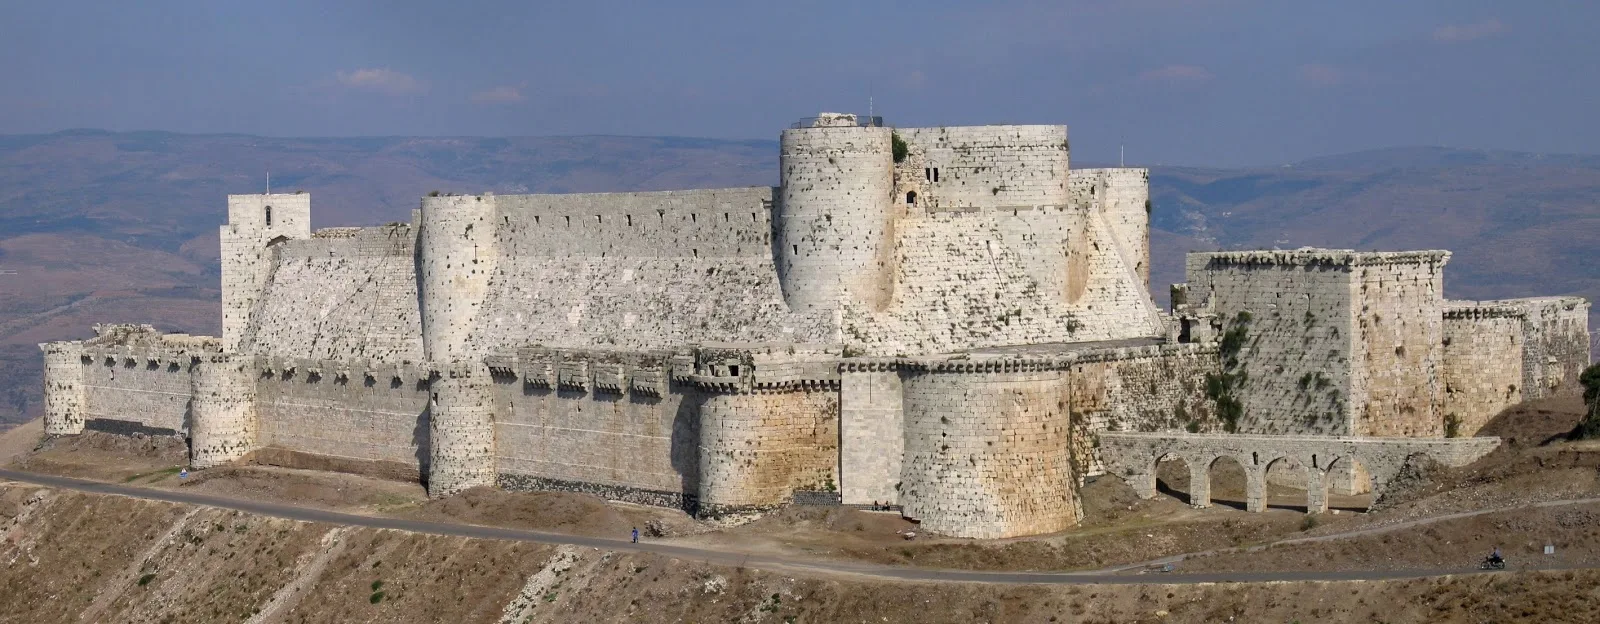 O Krak des Chevaliers, uma fortaleza construída durante as Cruzadas para a Ordem dos Cavaleiros Hospitalários